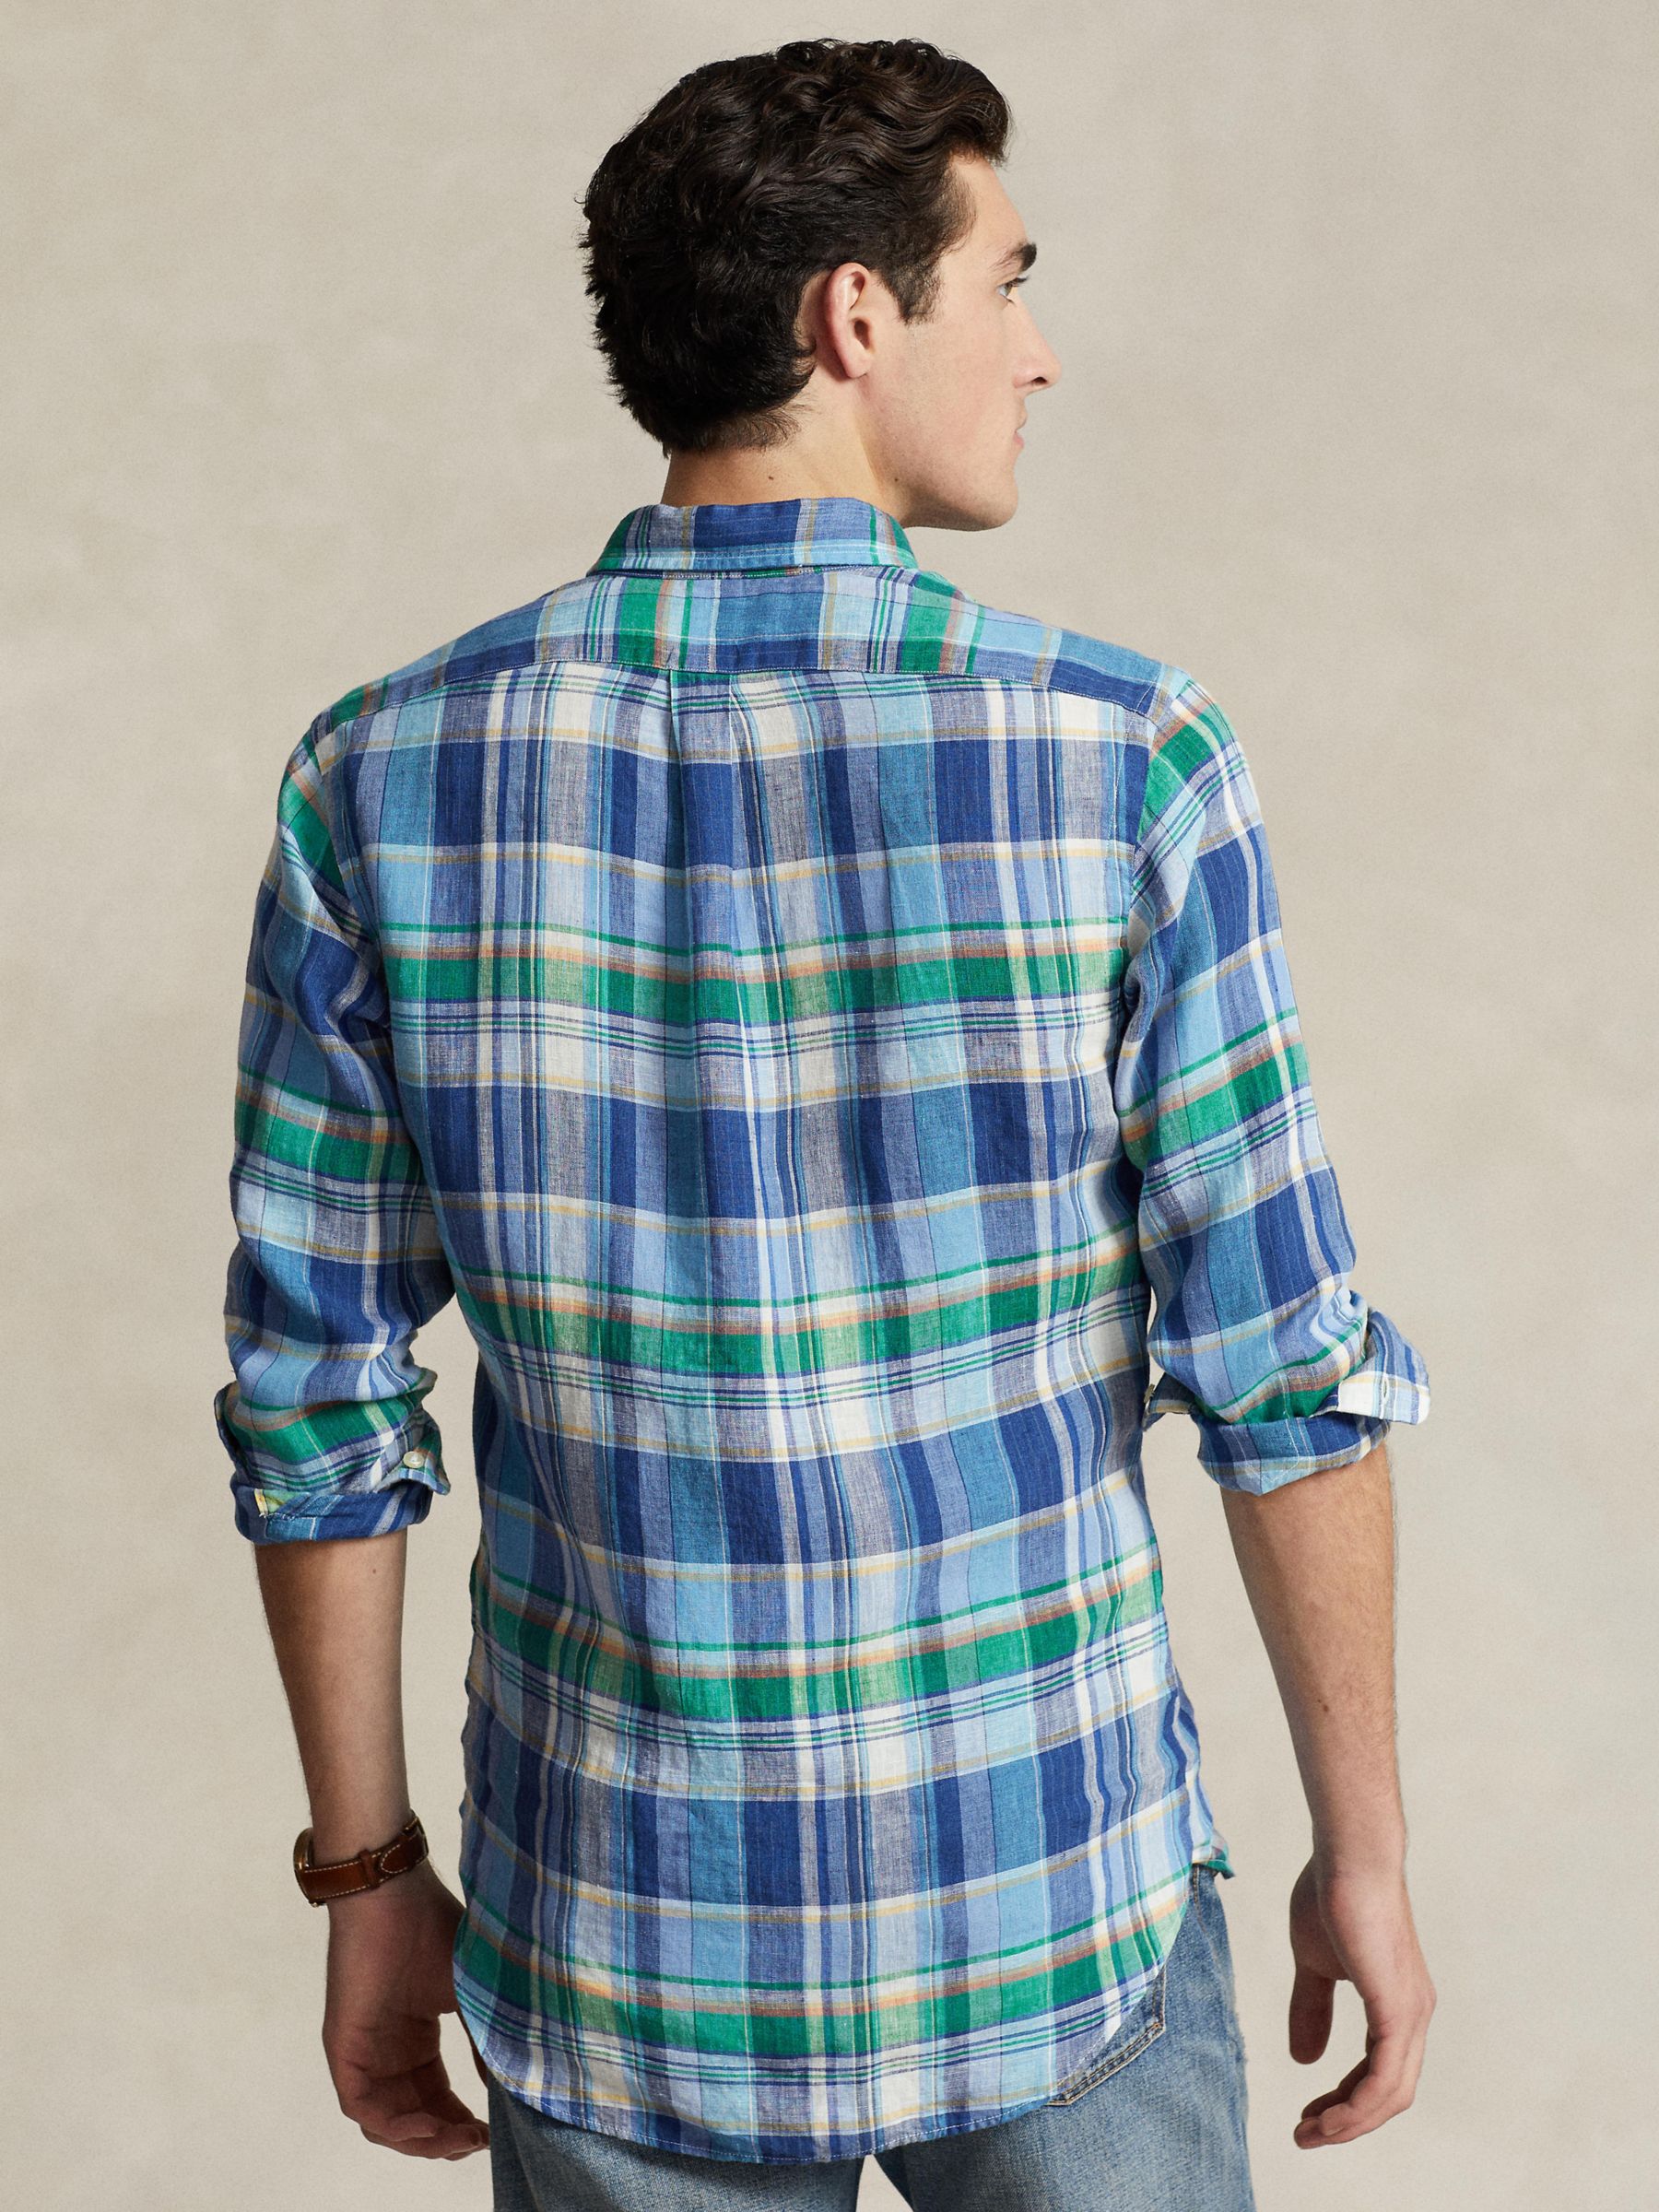 Ralph Lauren Linen Long Sleeve Check Shirt, 6357ablue/Greenmulti, S